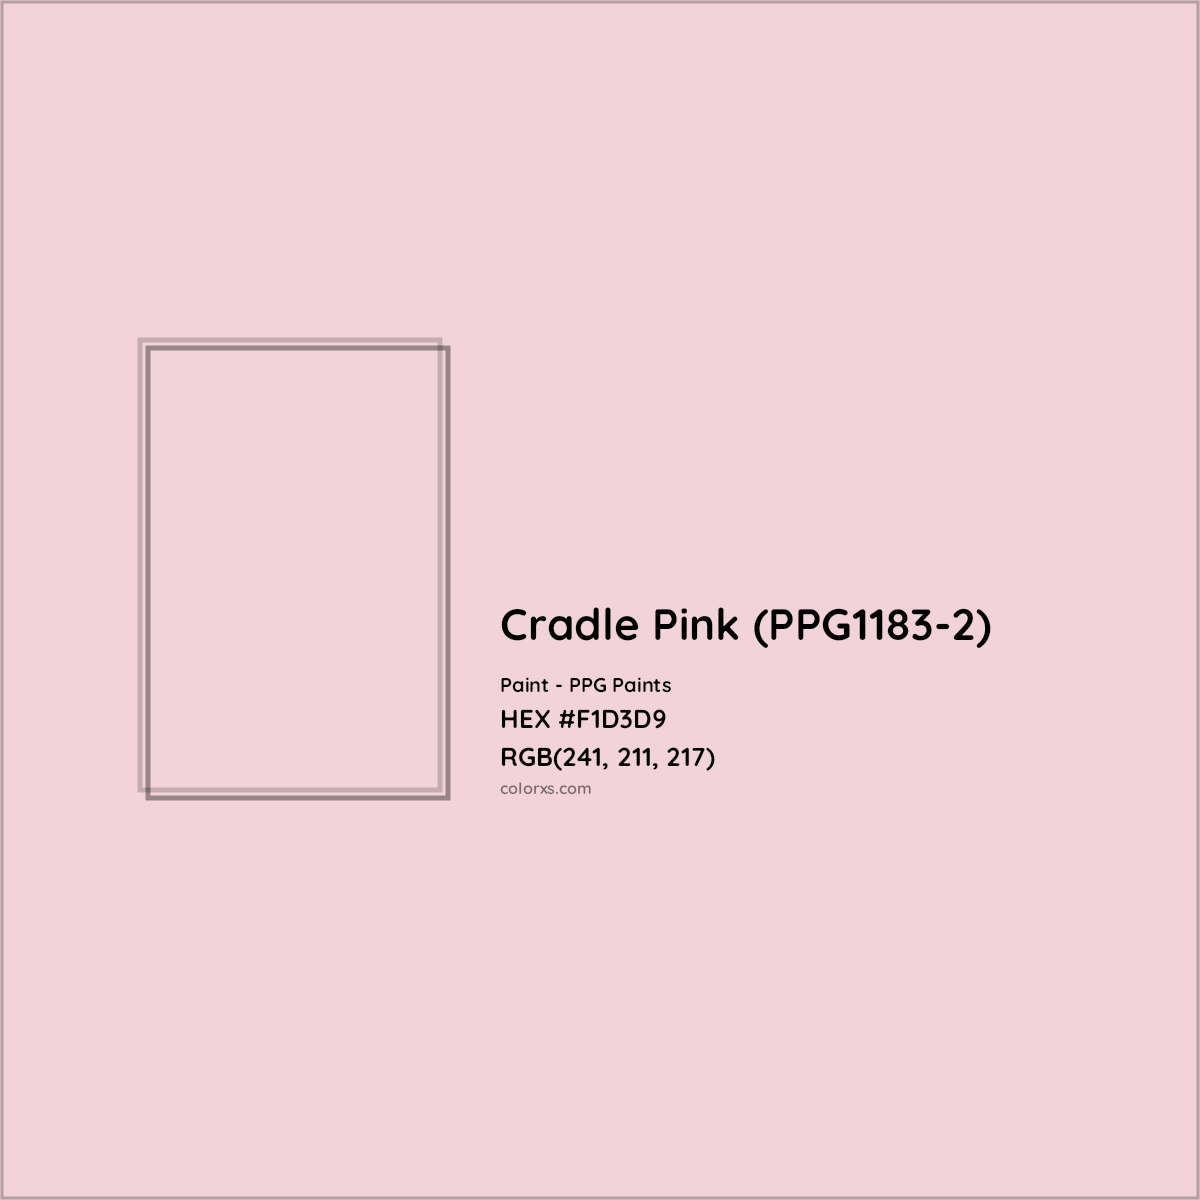 HEX #F1D3D9 Cradle Pink (PPG1183-2) Paint PPG Paints - Color Code